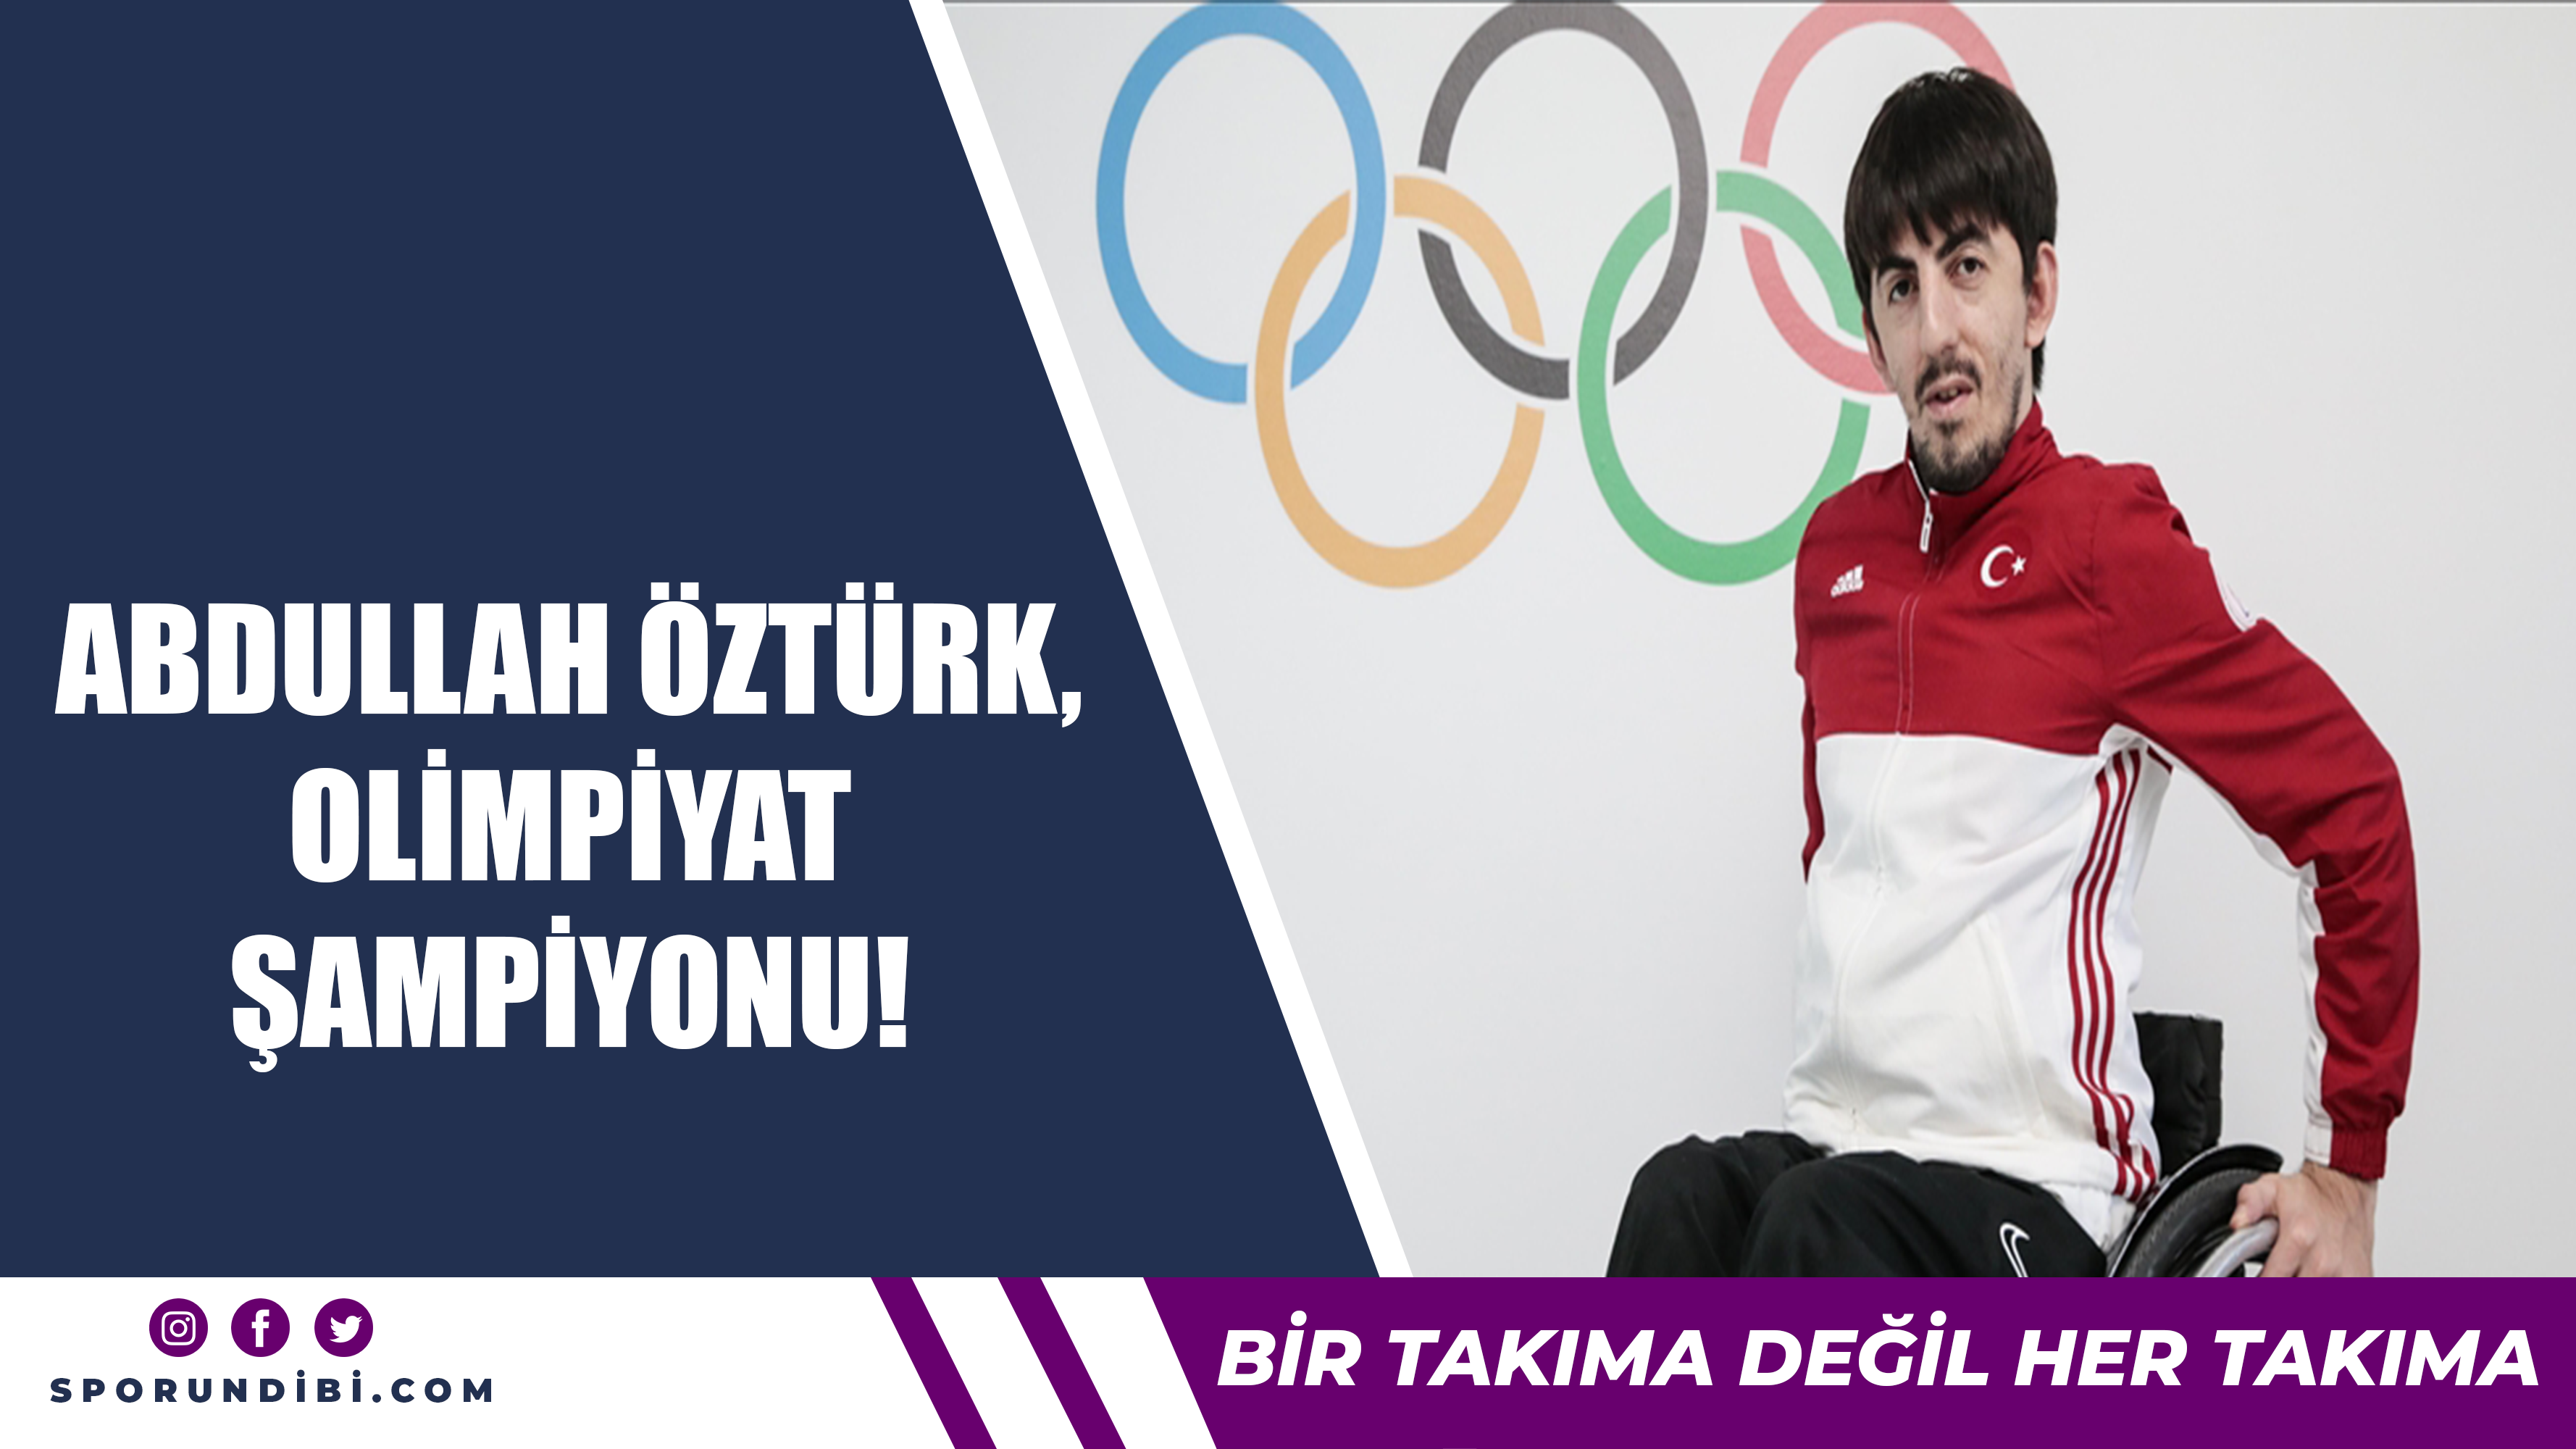 Abdullah Öztürk Olimpiyat Şampiyonu!